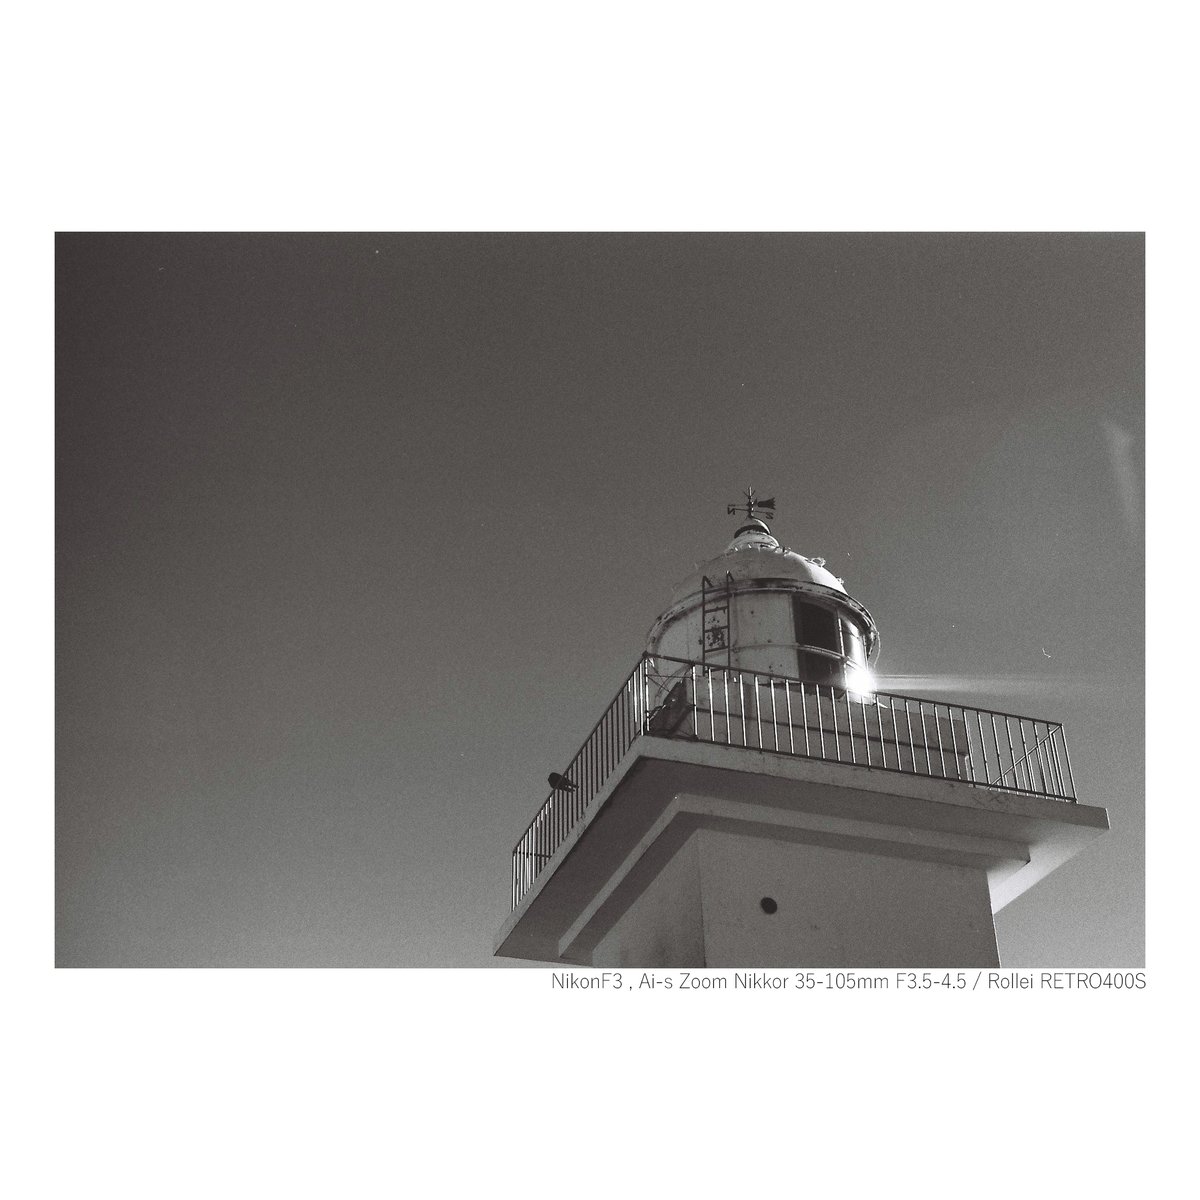 落石岬にてモノクロフィルム

📷NikonF3 / Ai-s Zoom Nikkor 35-105mm F3.5-4.5
 🎞Rollei RETRO400S / Ilford HP5 PLUS
#チャンプカメラ